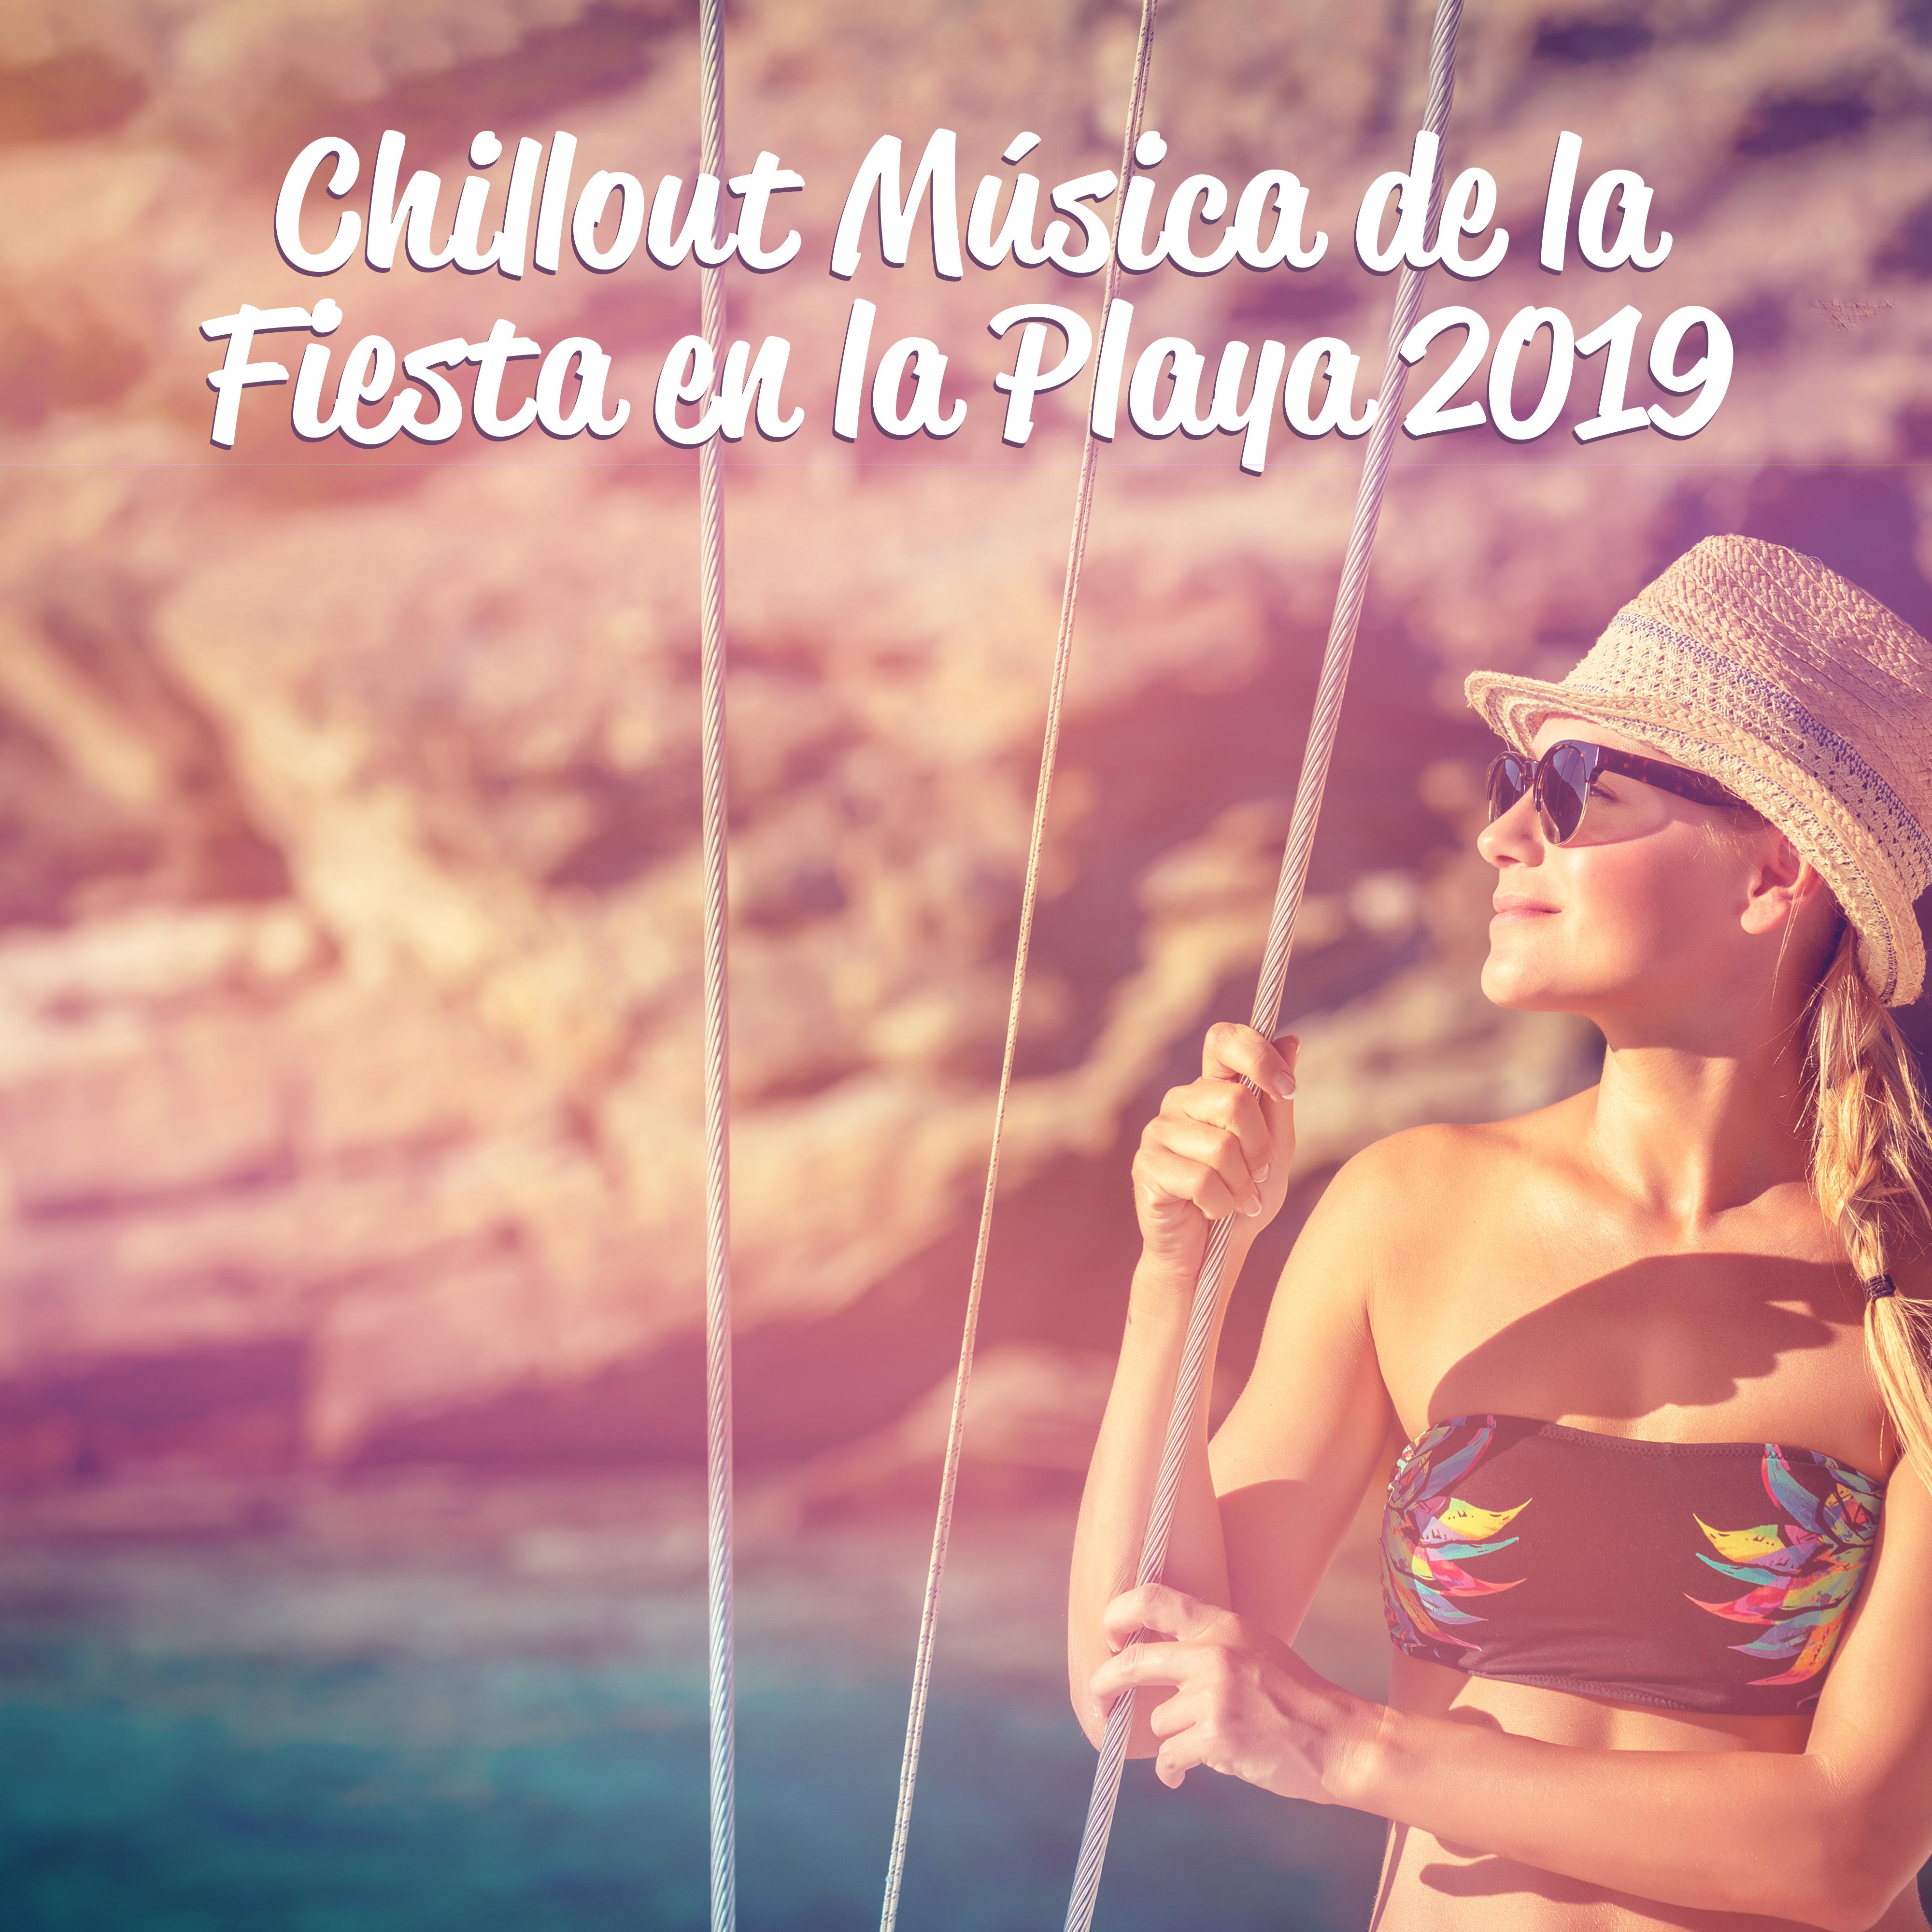 Chillout Mu sica de la Fiesta en la Playa 2019